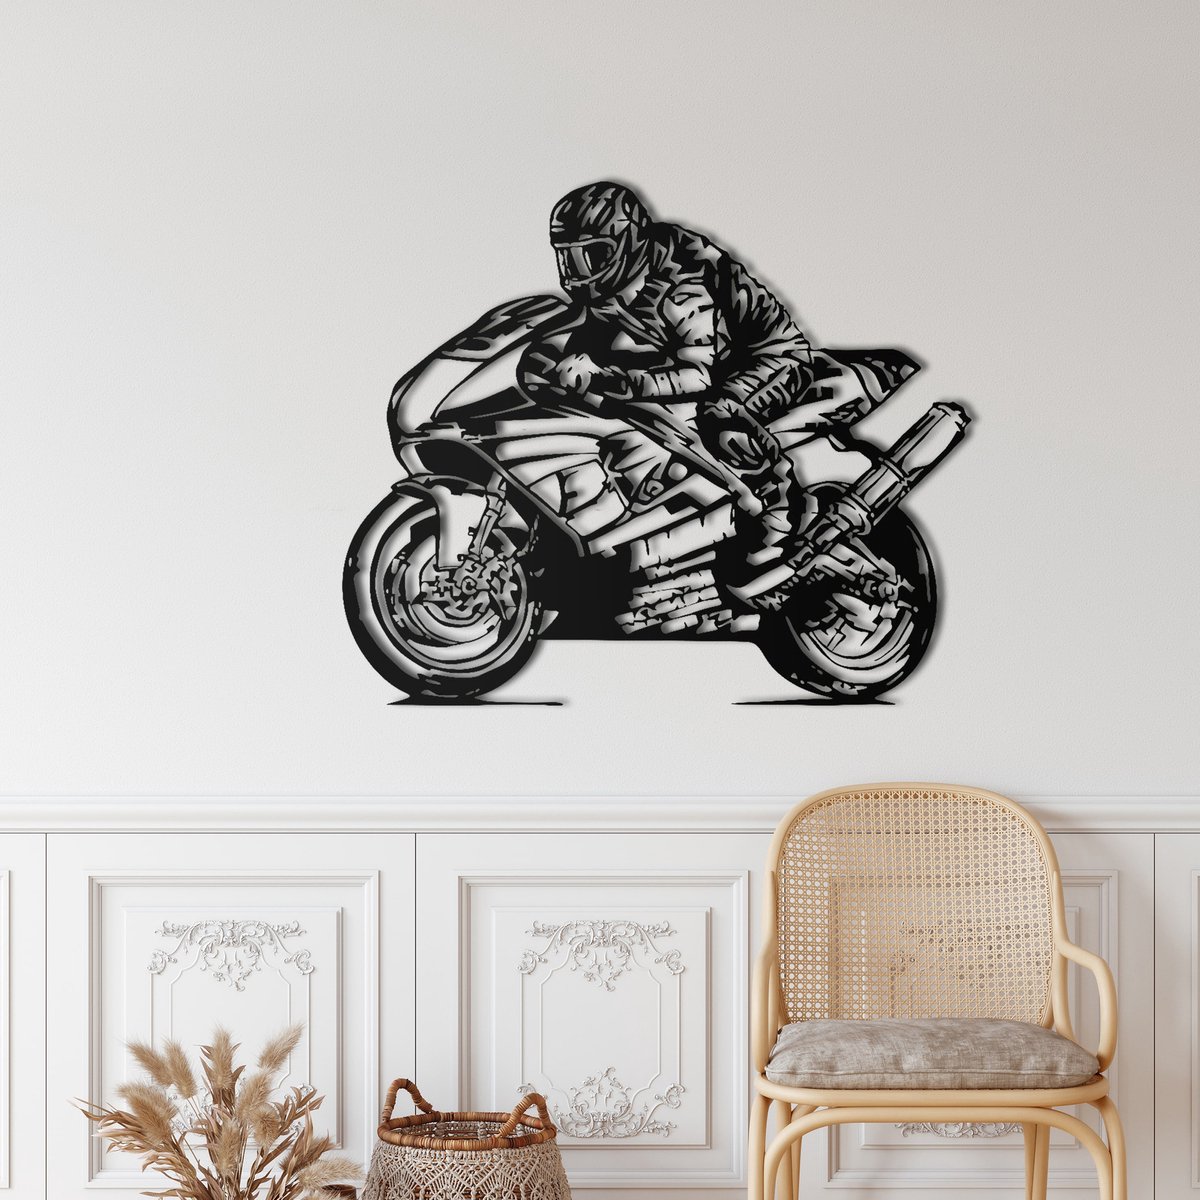 Moto décoration - Livraison gratuite - la déco du motard